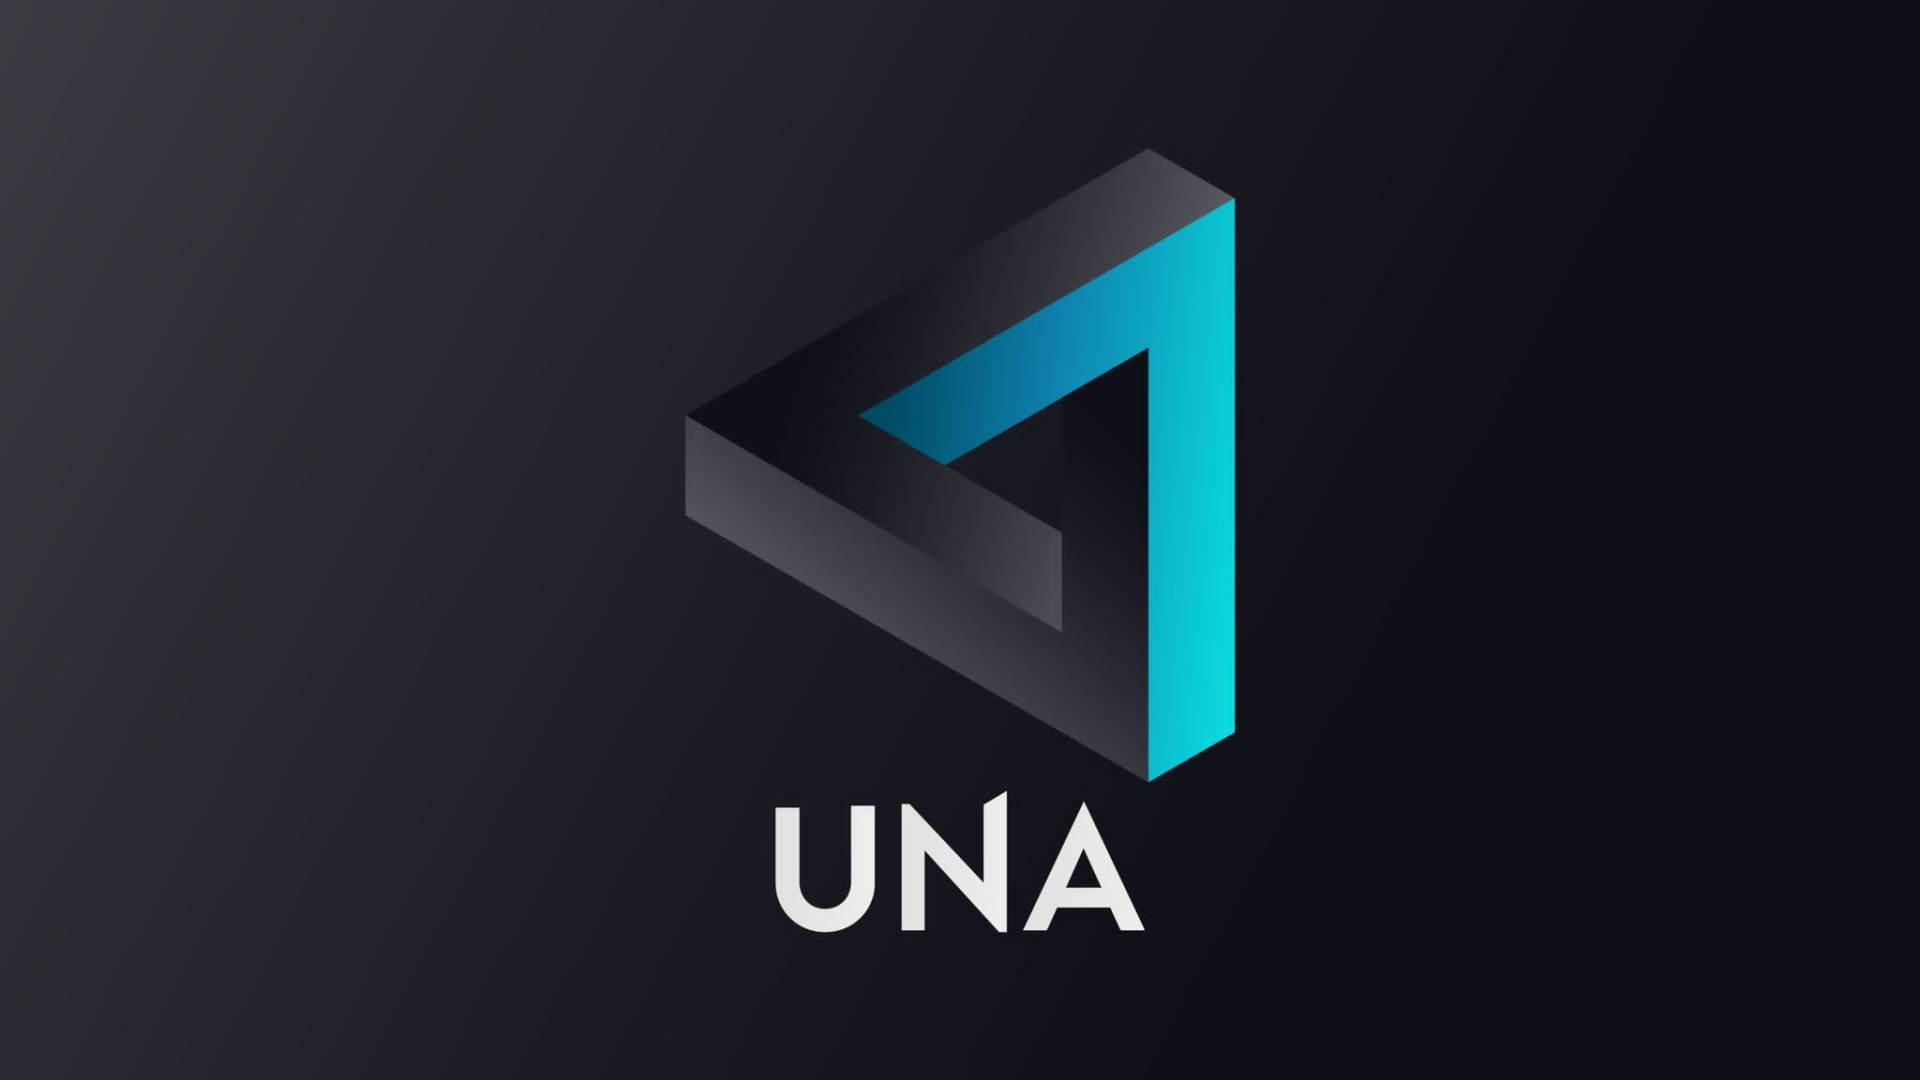  UNA medijski projekat televizija aplikacije i produkcija 